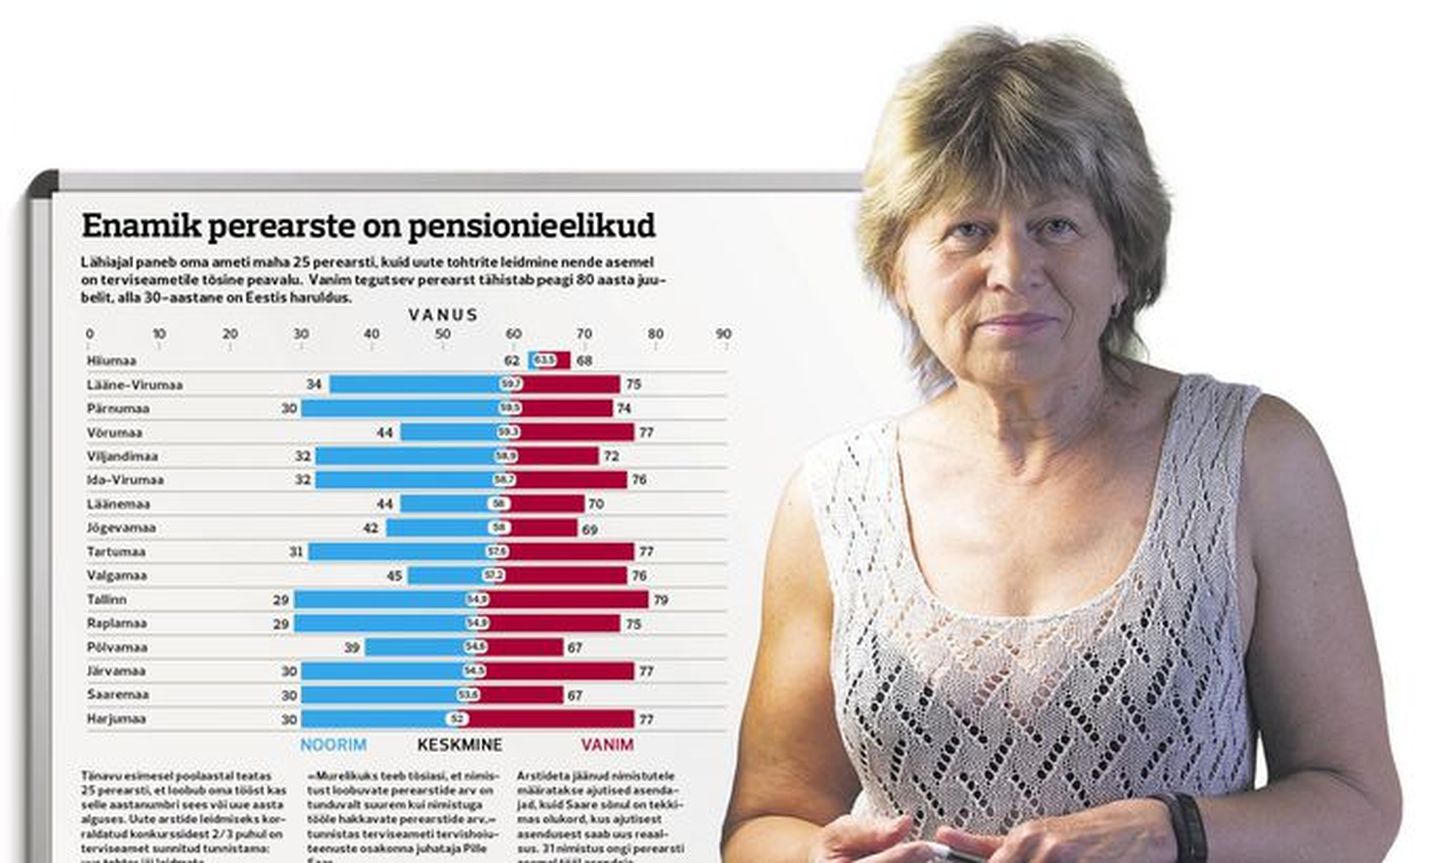 Большая часть семейных врачей Эстонии вот-вот достигнут пренсионного возраста.